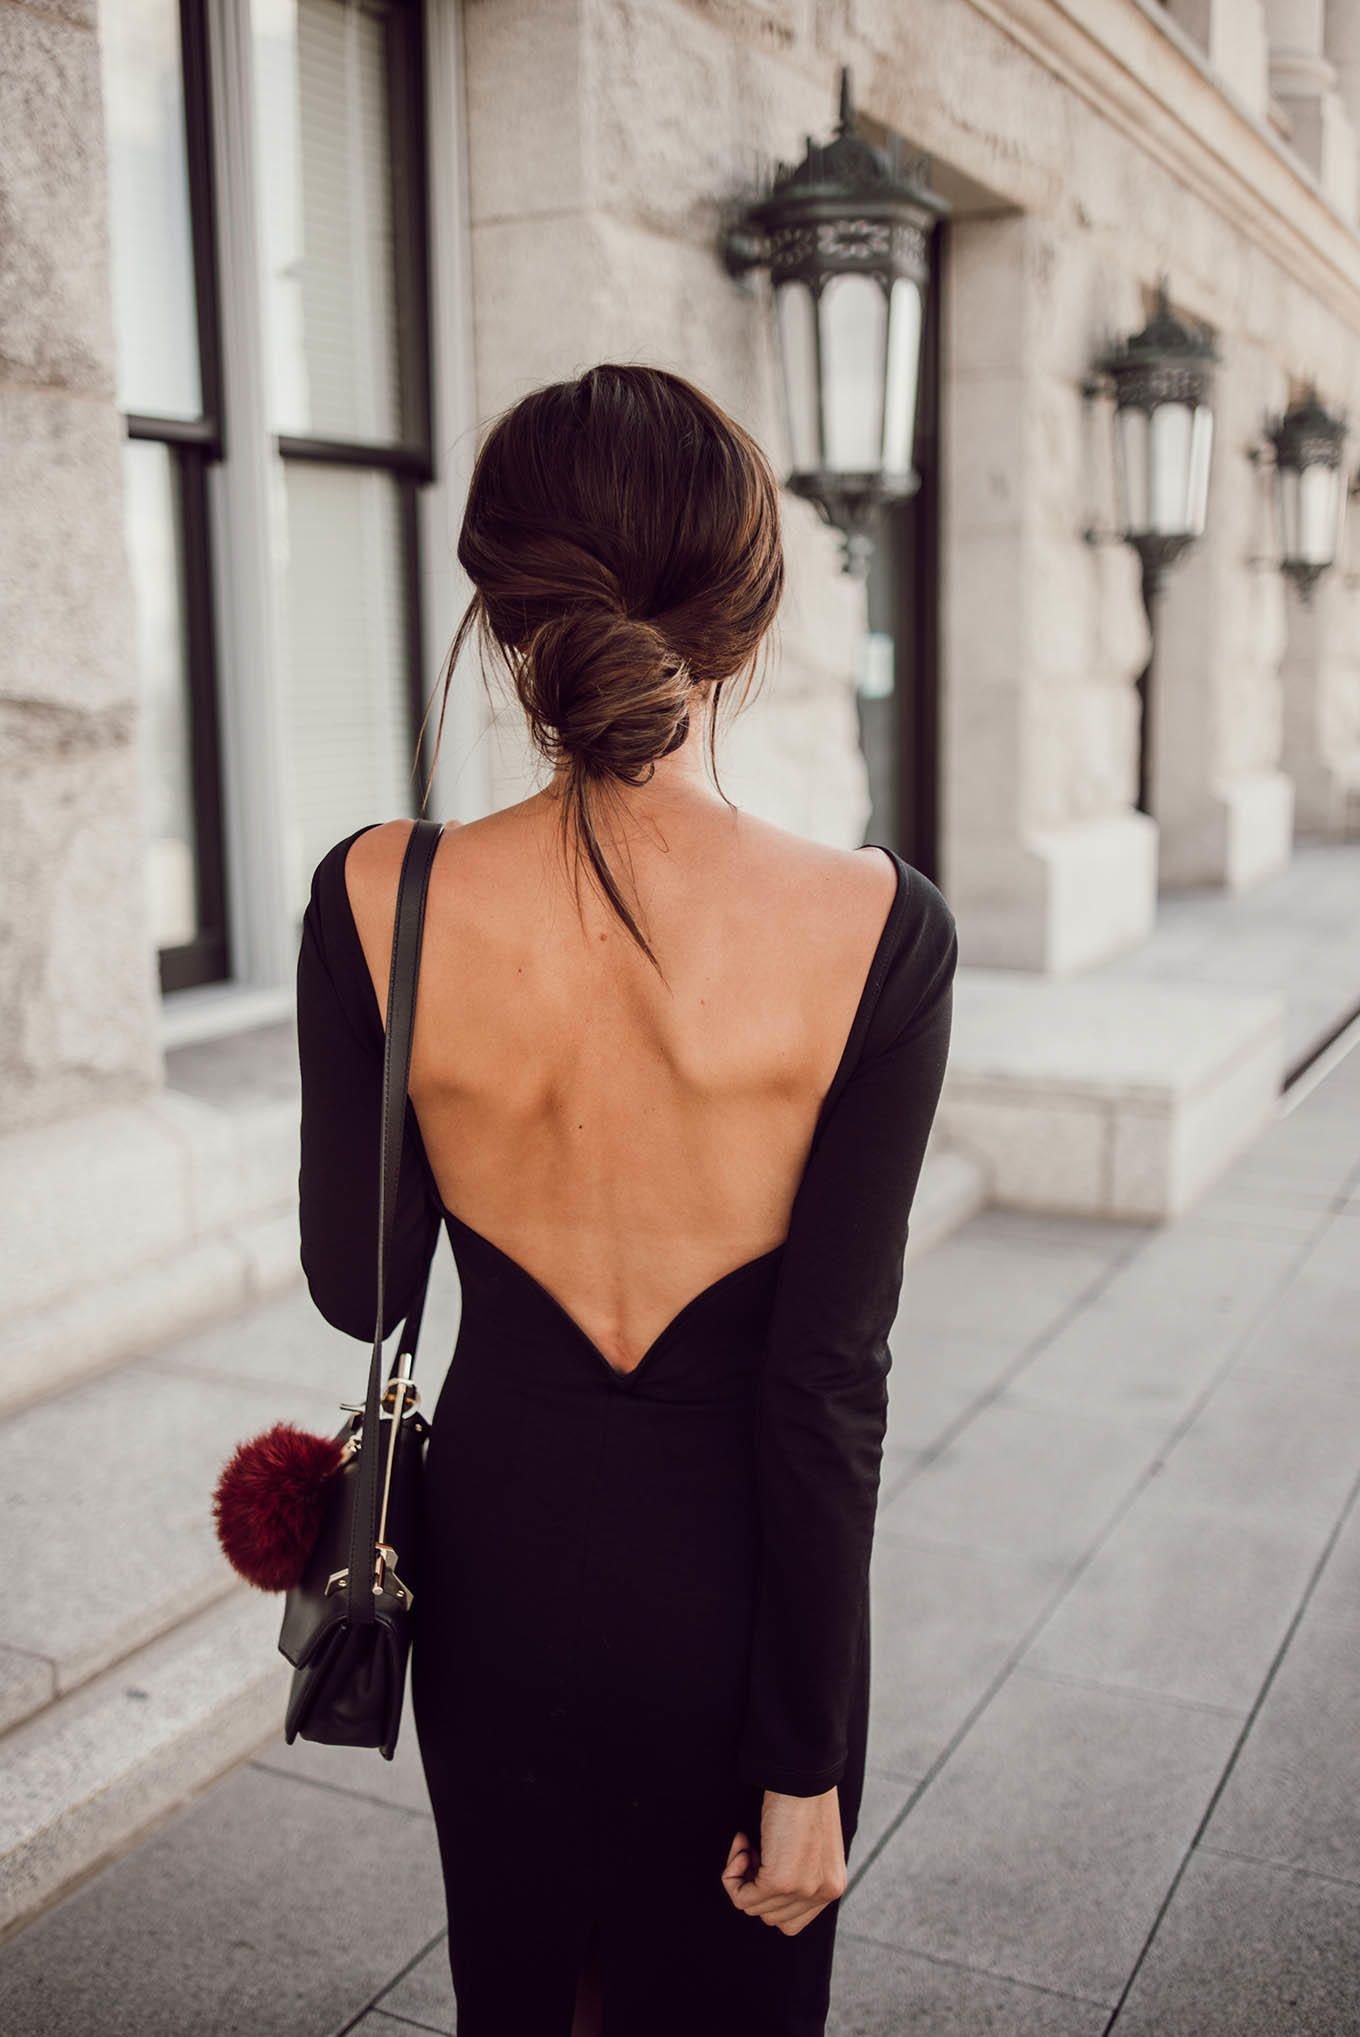 Фото на аву спиной для девушки. Платье с красивой спиной. Девушка в платье со спины.